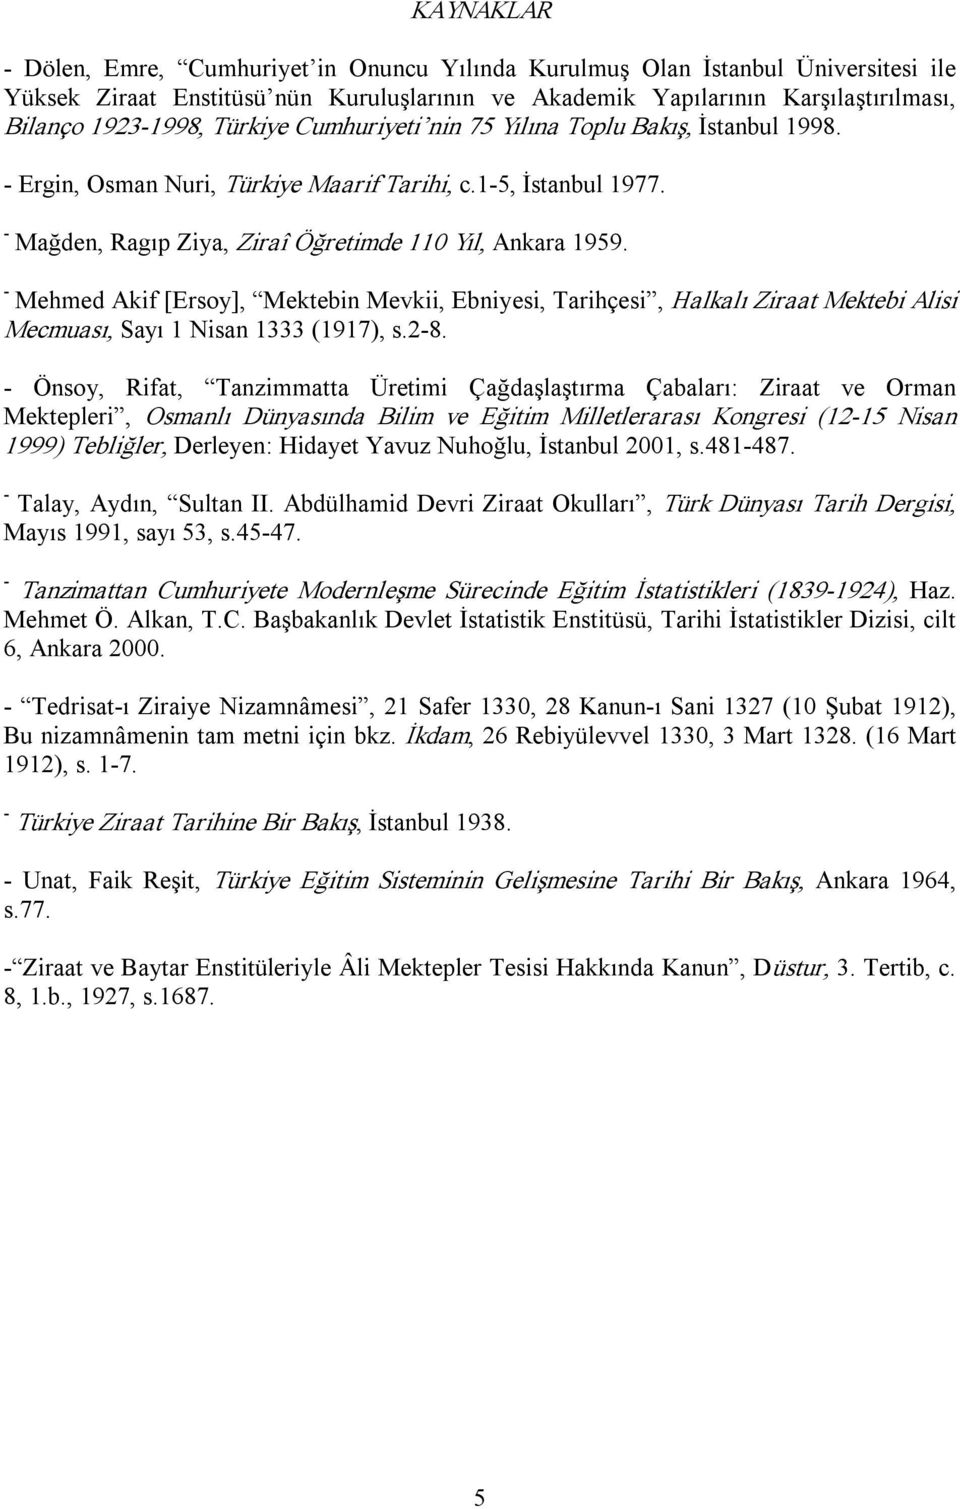 Mehmed Akif [Ersoy], Mektebin Mevkii, Ebniyesi, Tarihçesi, Halkalı Ziraat Mektebi Alisi Mecmuası, Sayı 1 Nisan 1333 (1917), s.28.